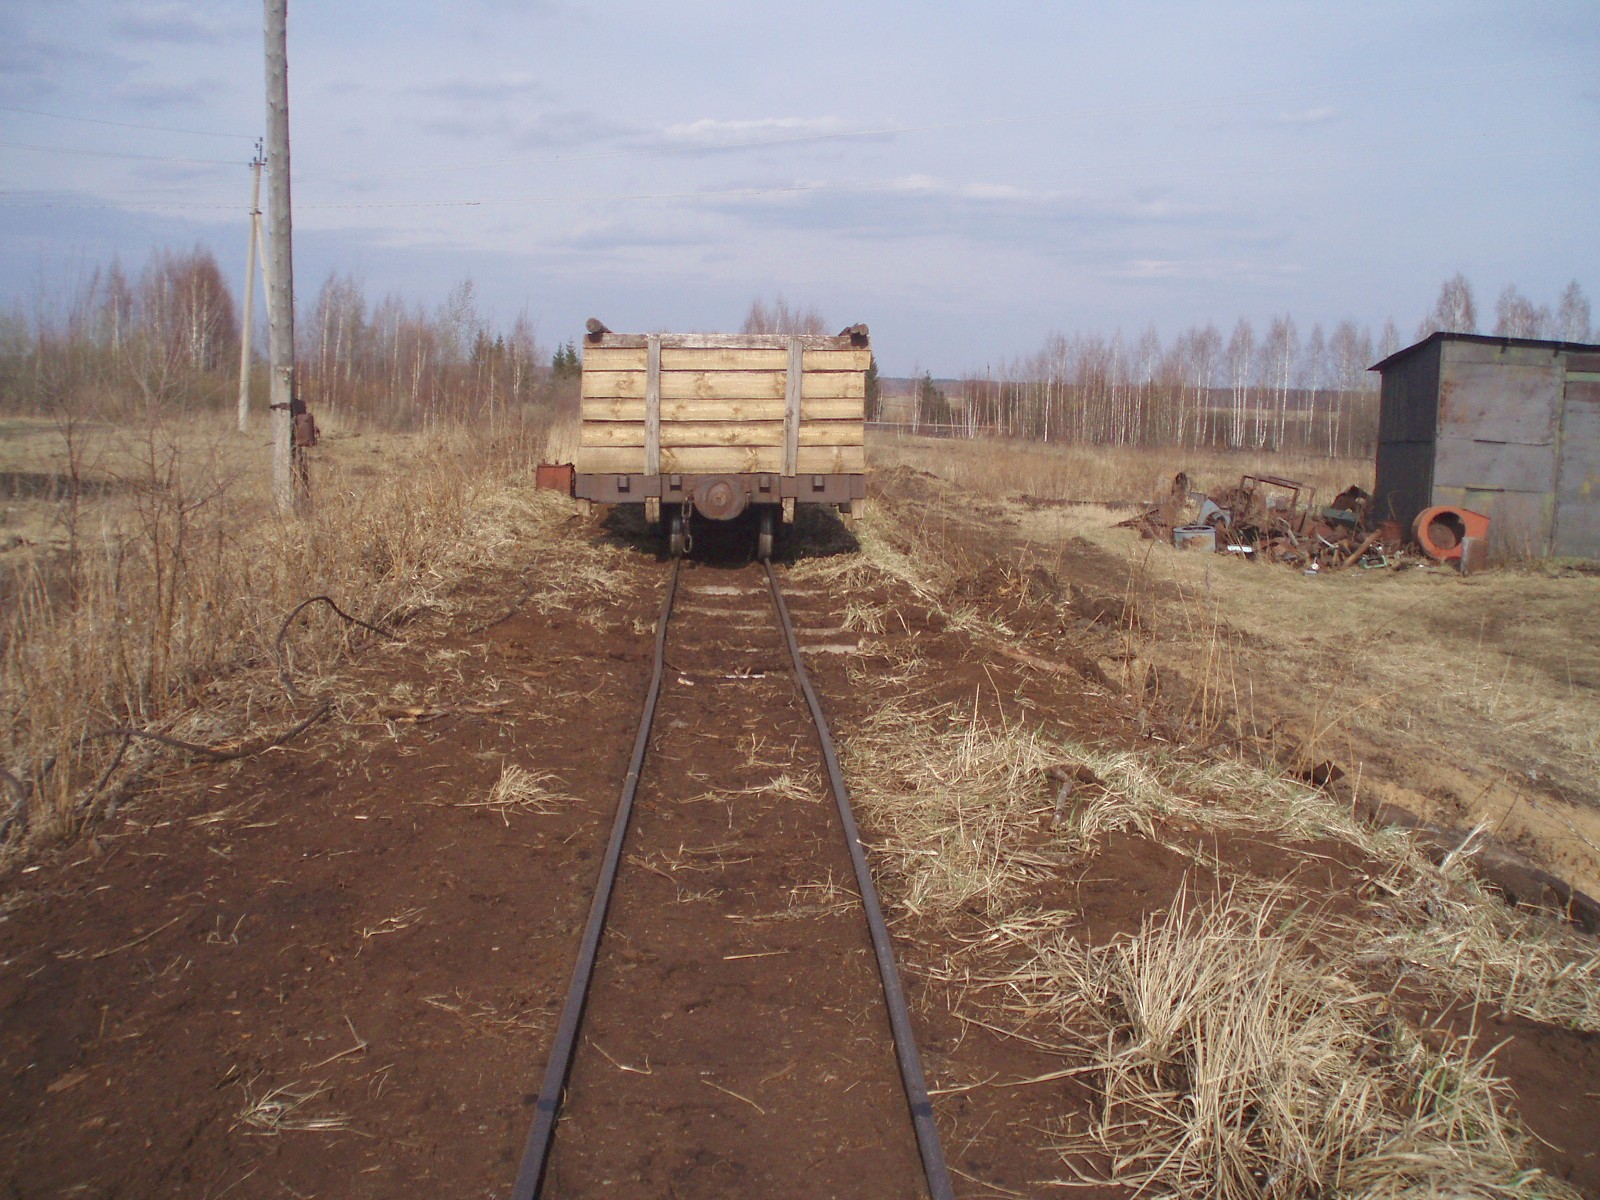 Узкоколейная железная дорога Кимрского торфопредприятия  — фотографии, сделанные в 2007 году (часть 19)